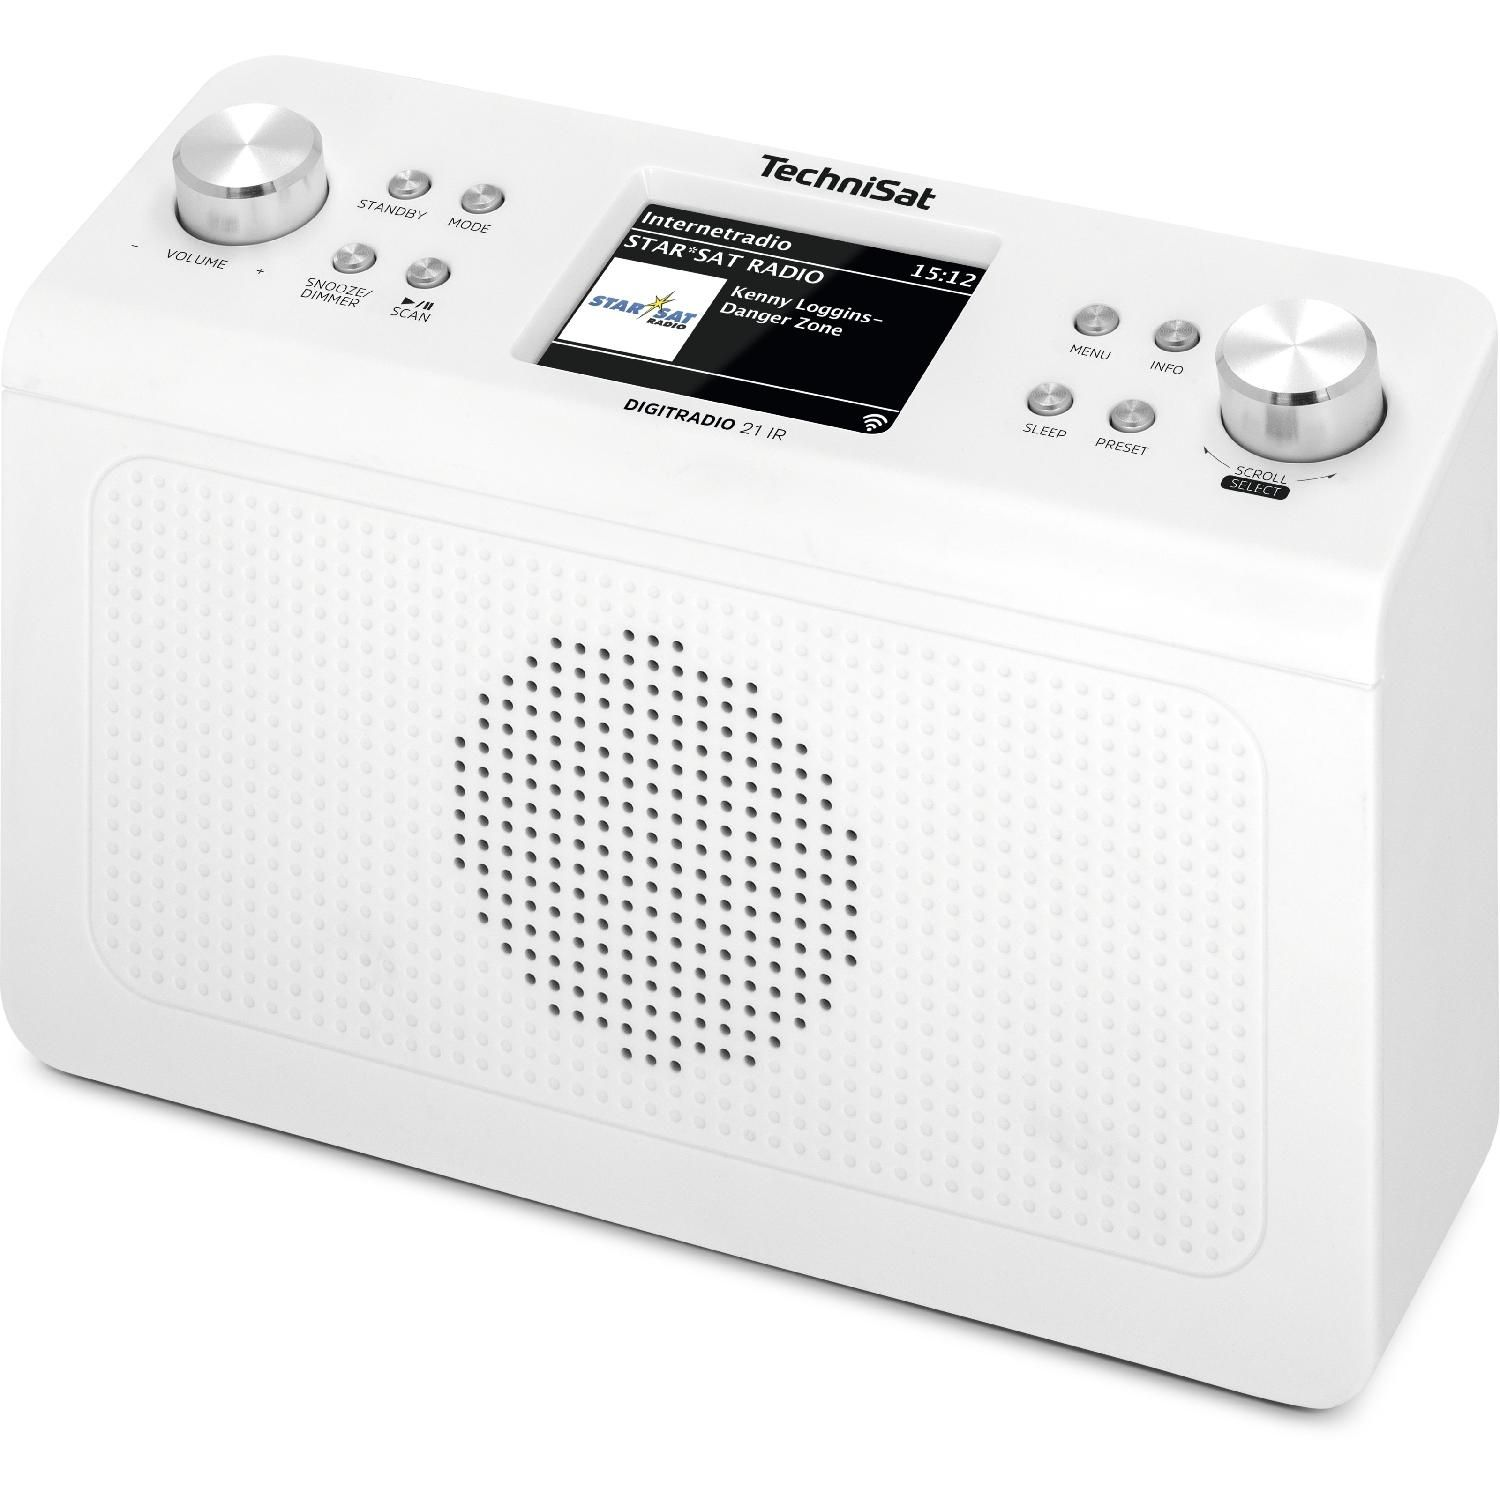 TECHNISAT DIGITRADIO 21 IR DAB+ Radio, Bluetooth, weiß DAB, Radio, FM, Internet DAB+, AM, DAB, FM